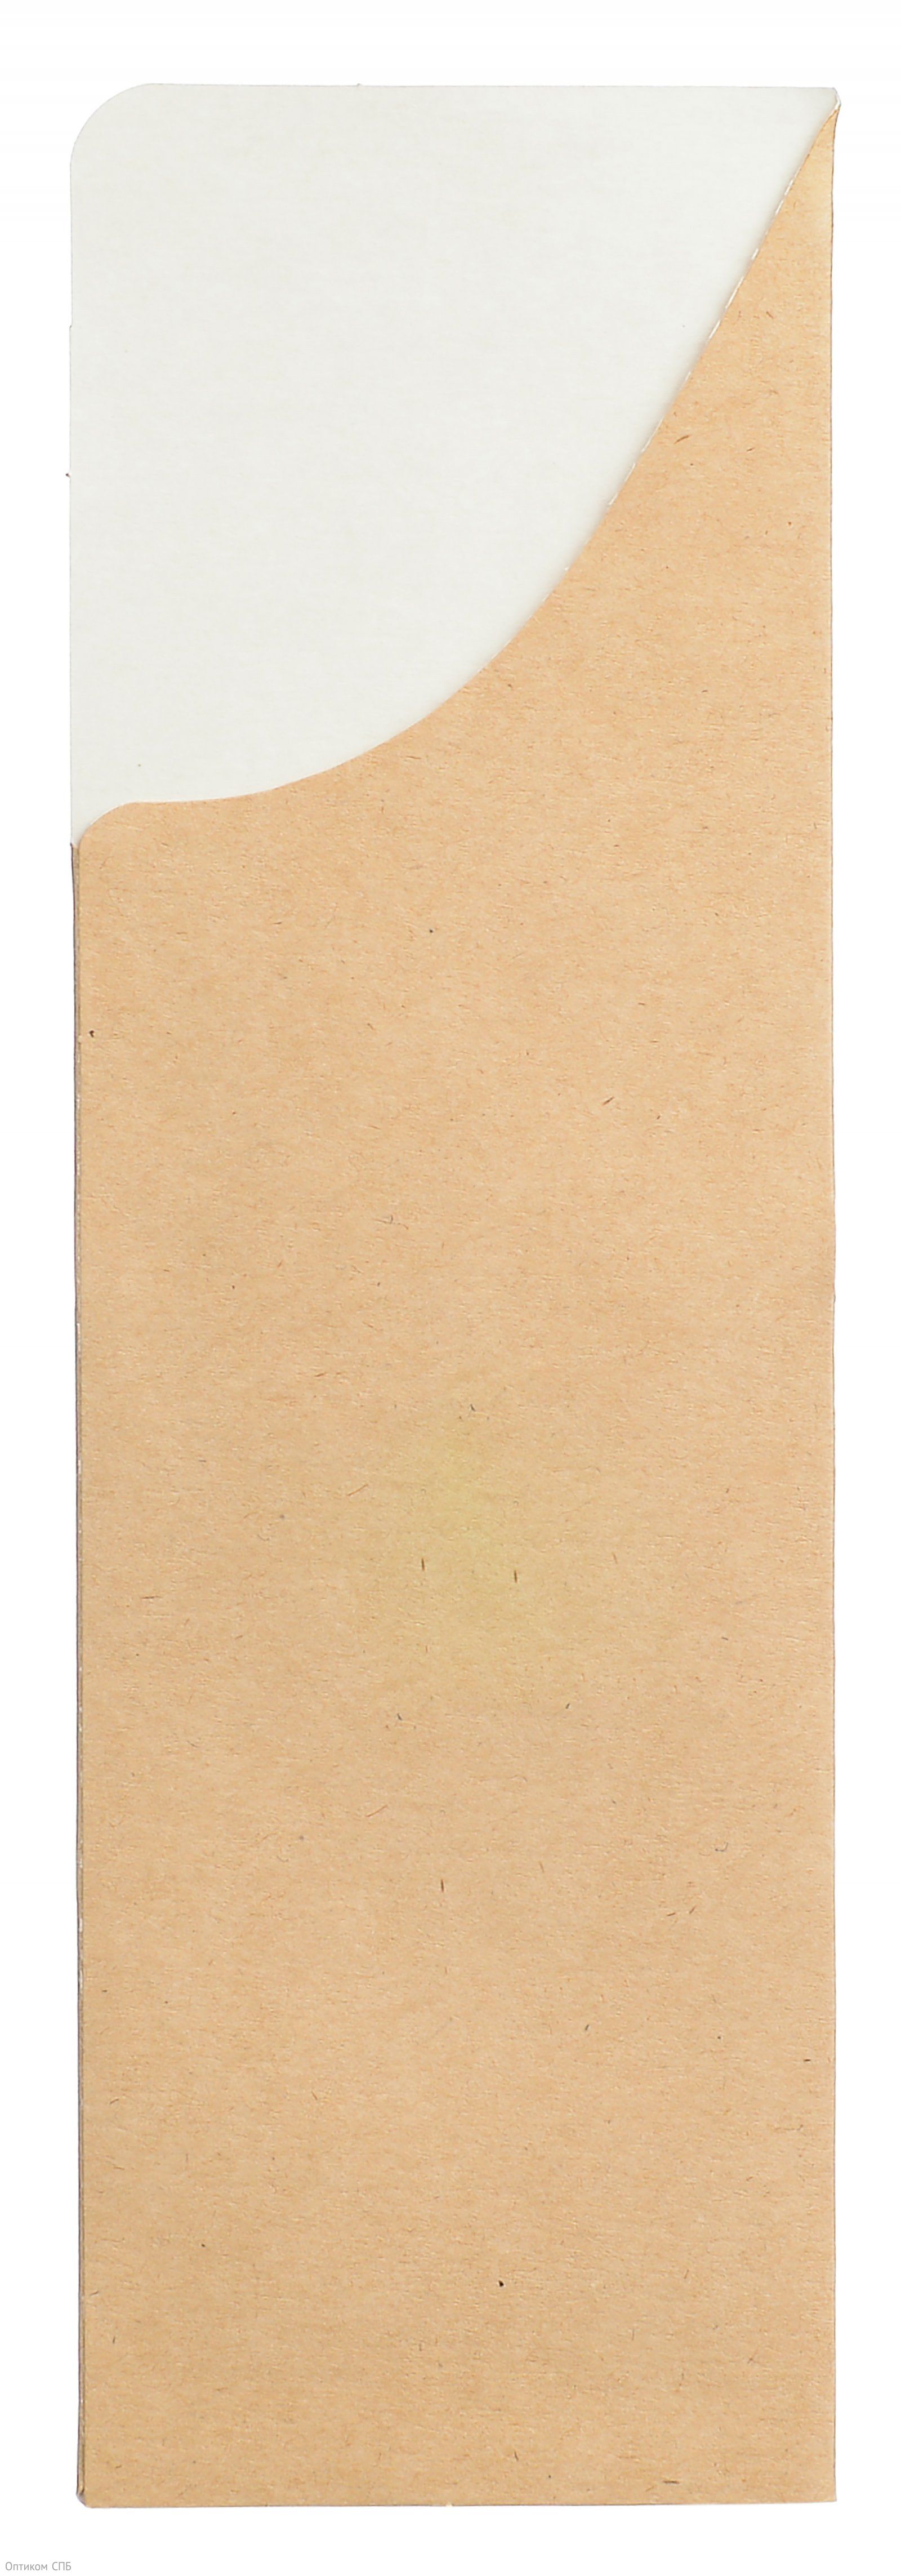 Бумажный конверт Оригамо предназначен для красивой выкладки столовых приборов или бамбуковых палочек для суши. Не требует сборки и занимает минимум места при хранении. Изготовлен из картона крафтового цвета. Отличается прочностью и надежностью в использовании. Размер 190х60 мм. В упаковке 1000 штук.